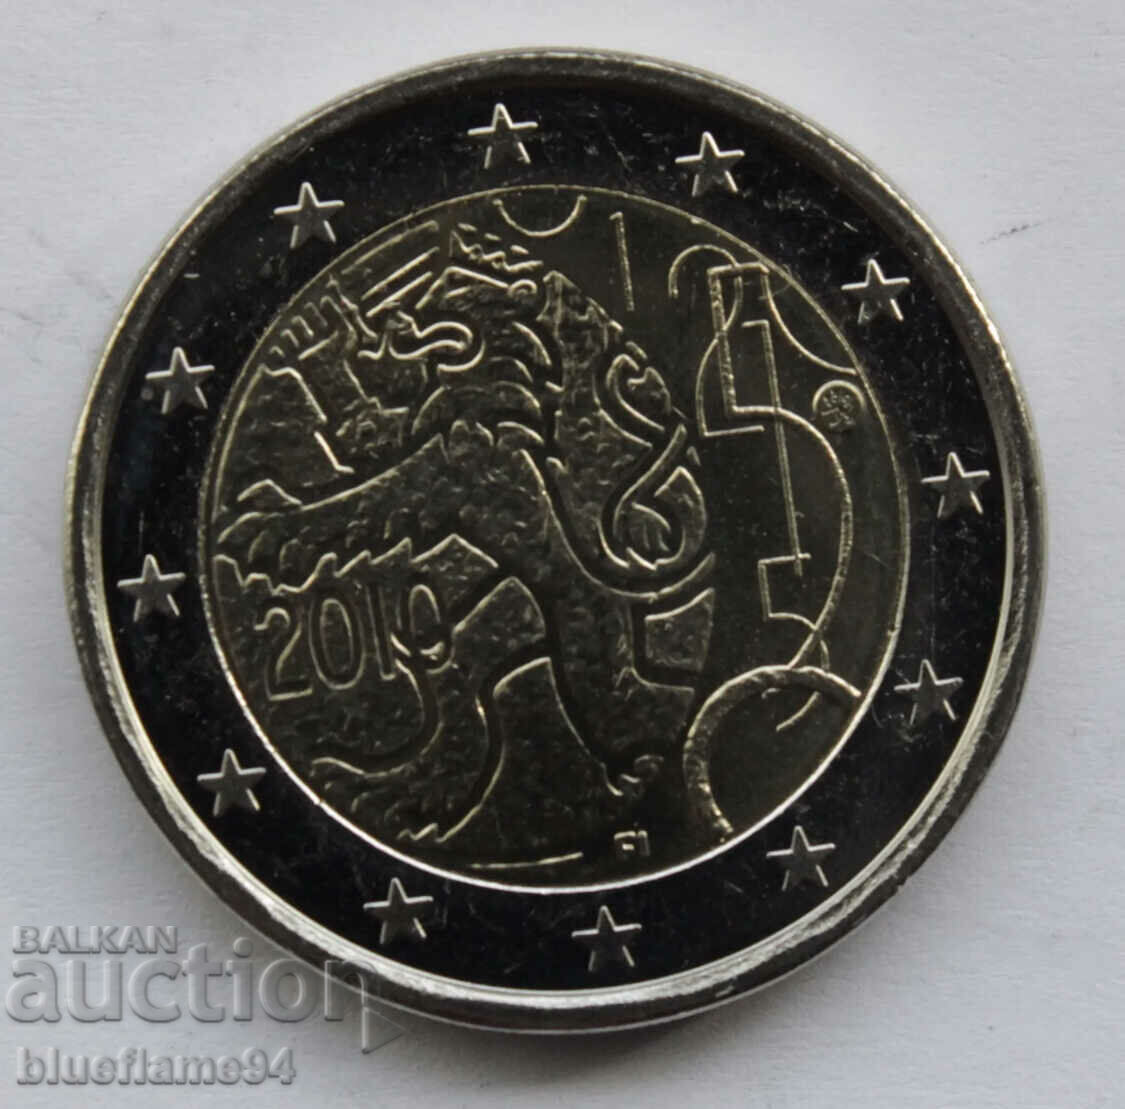 Finlanda 2 euro 2010